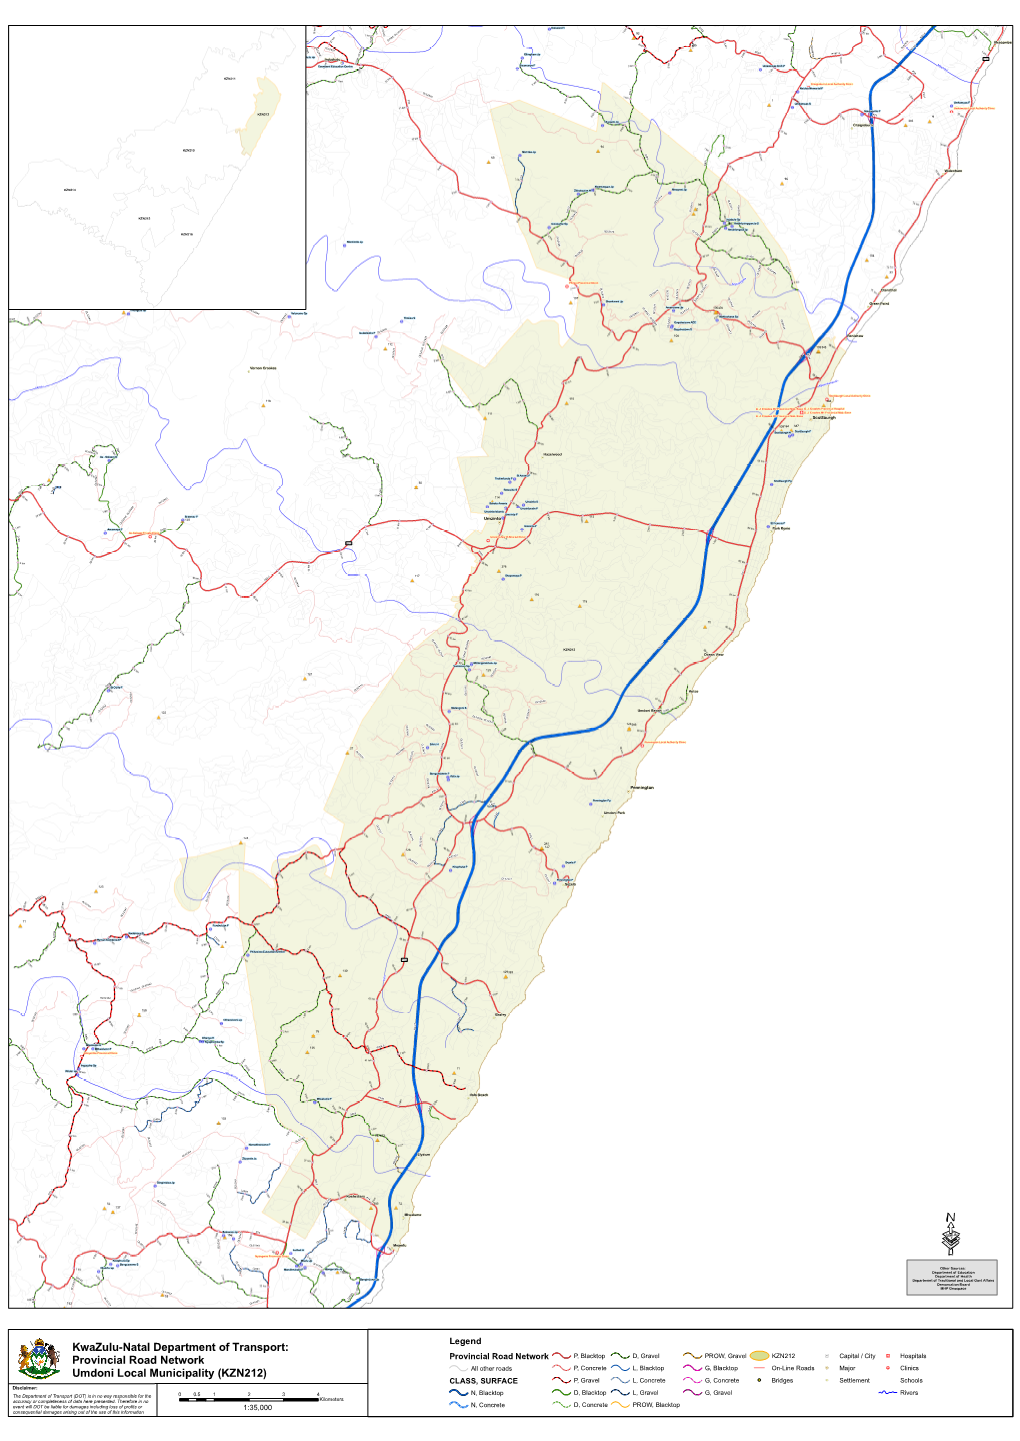 Provincial Road Network